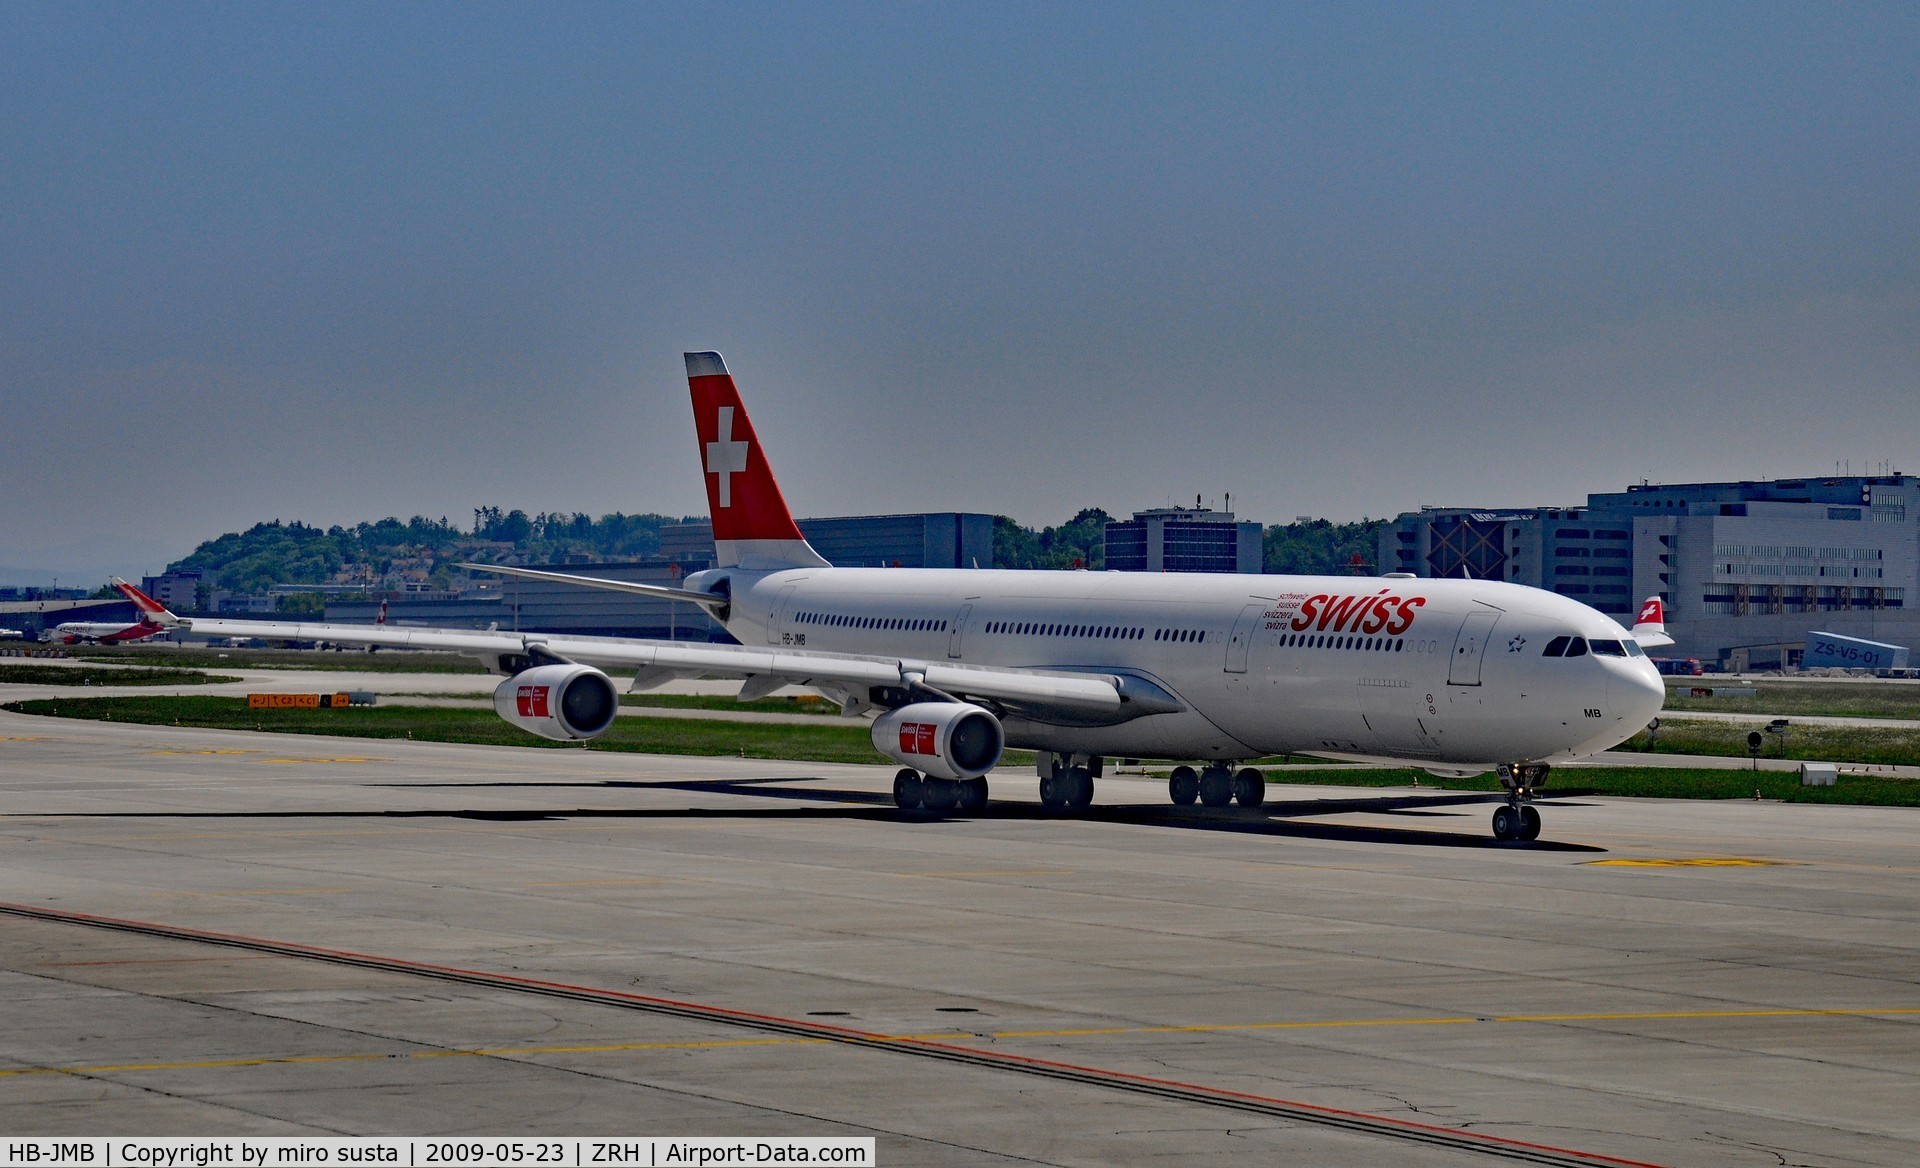 HB-JMB, 2003 Airbus A340-313 C/N 545, Swiss International Airlines Airbus A340-313 Airplane, Zurich-Kloten International Airport